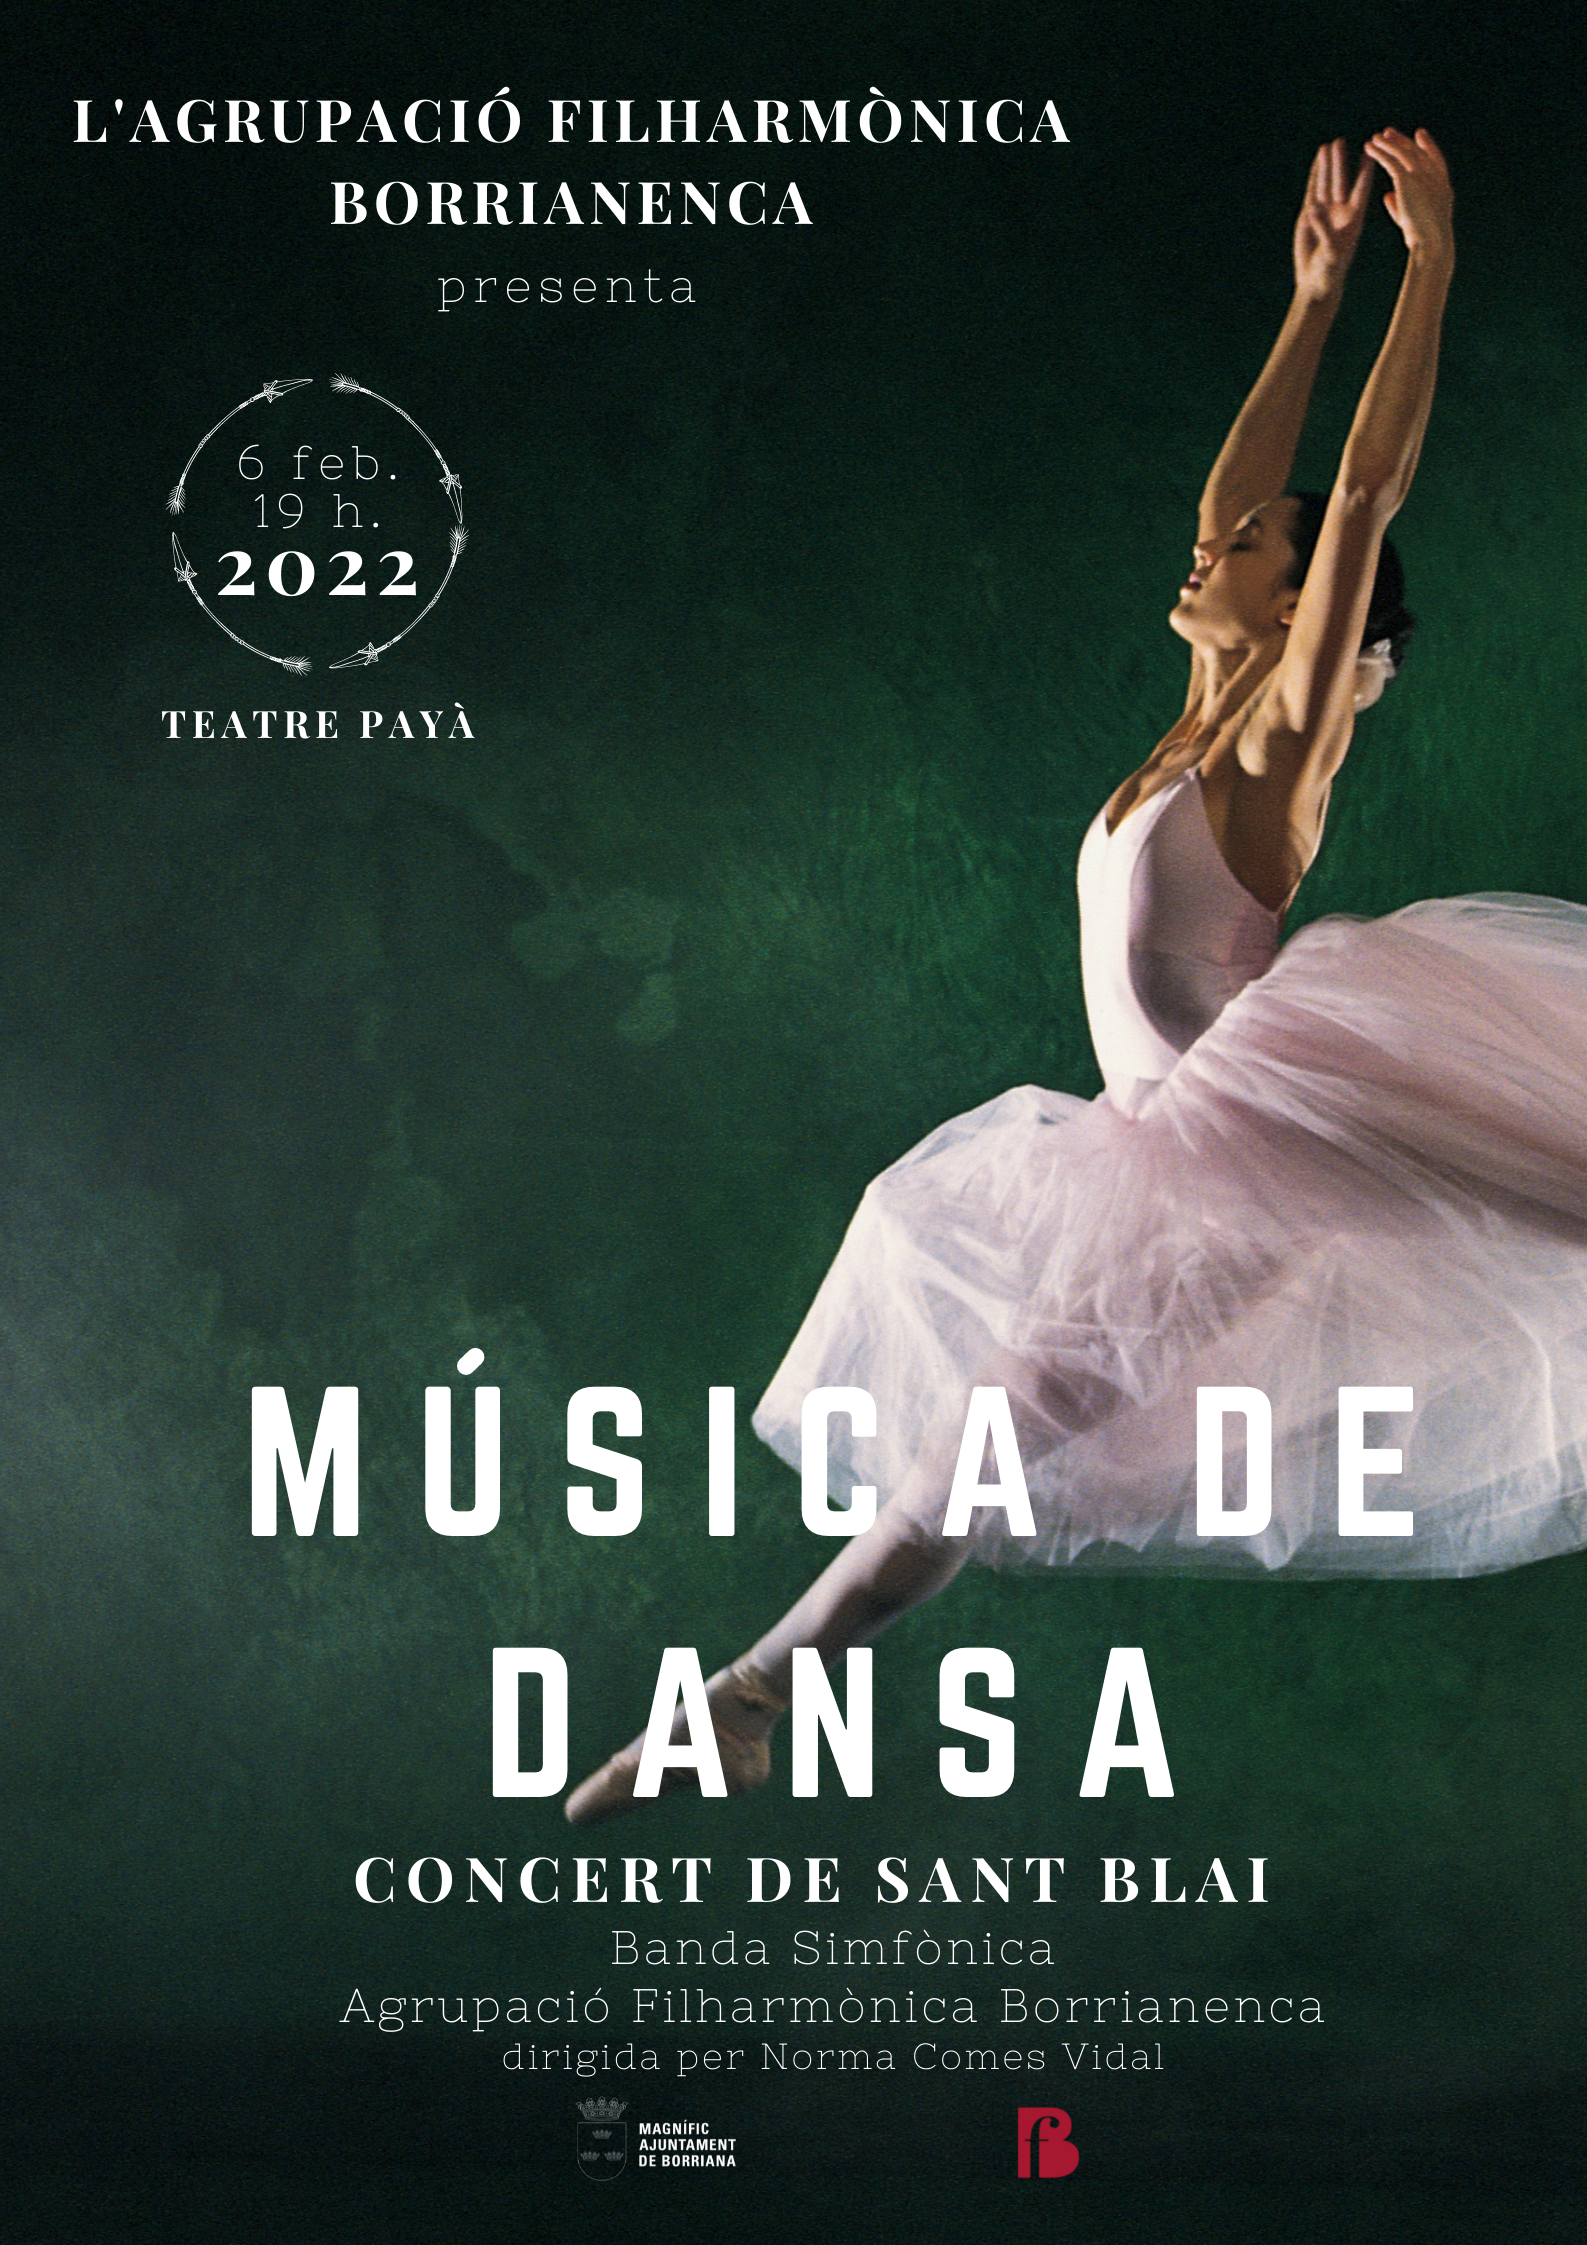 El Teatro Payà acogerá el Concierto de Sant Blai de la Banda Sinfónica de la Agrupació Filharmònica Borrianenca